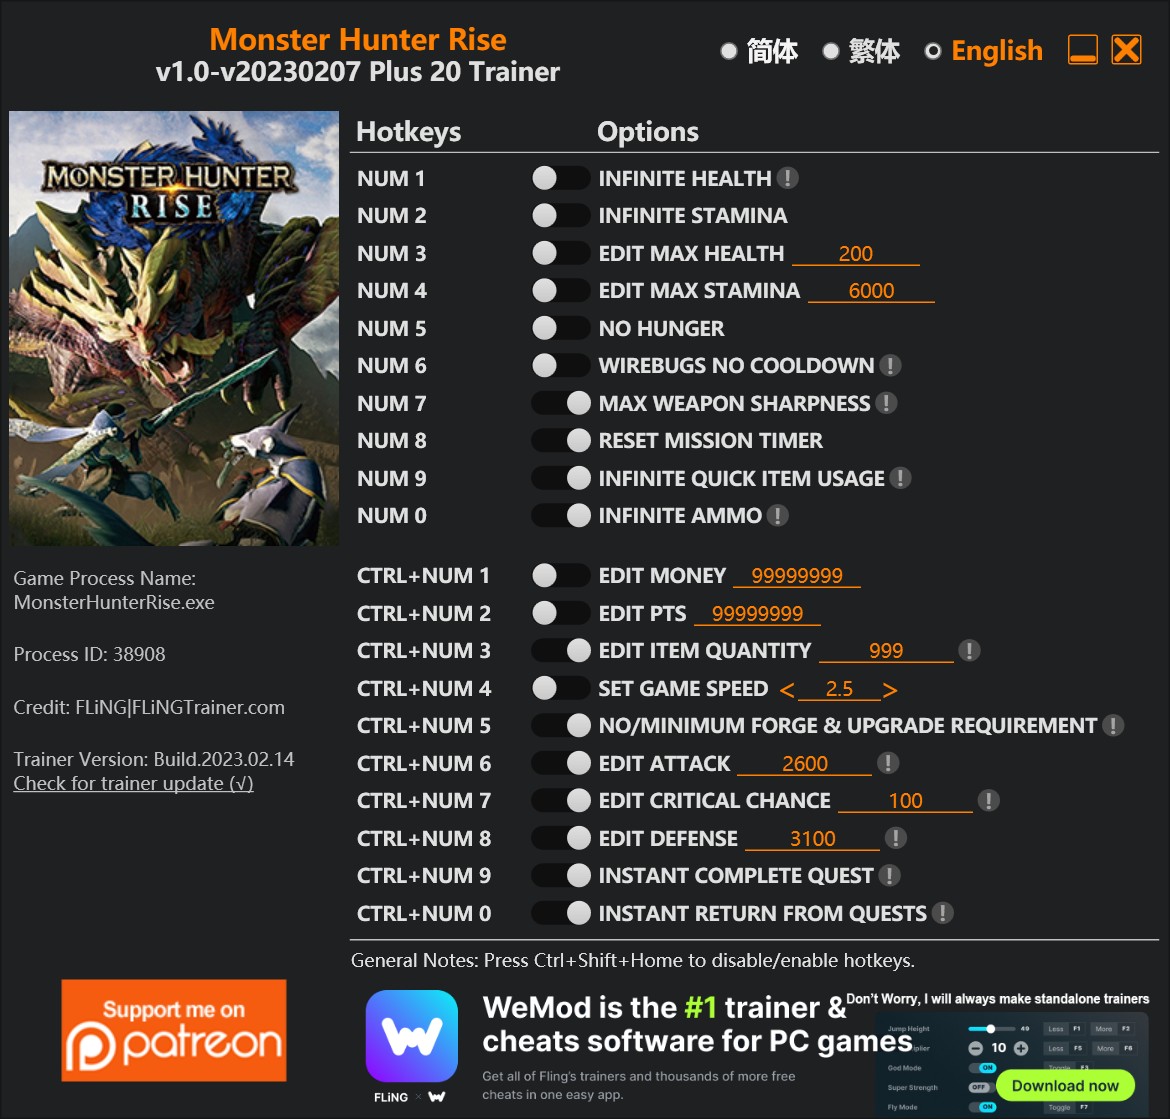 Monster Hunter Rise: Trainer +19 v1.0-v20220630 {FLiNG}